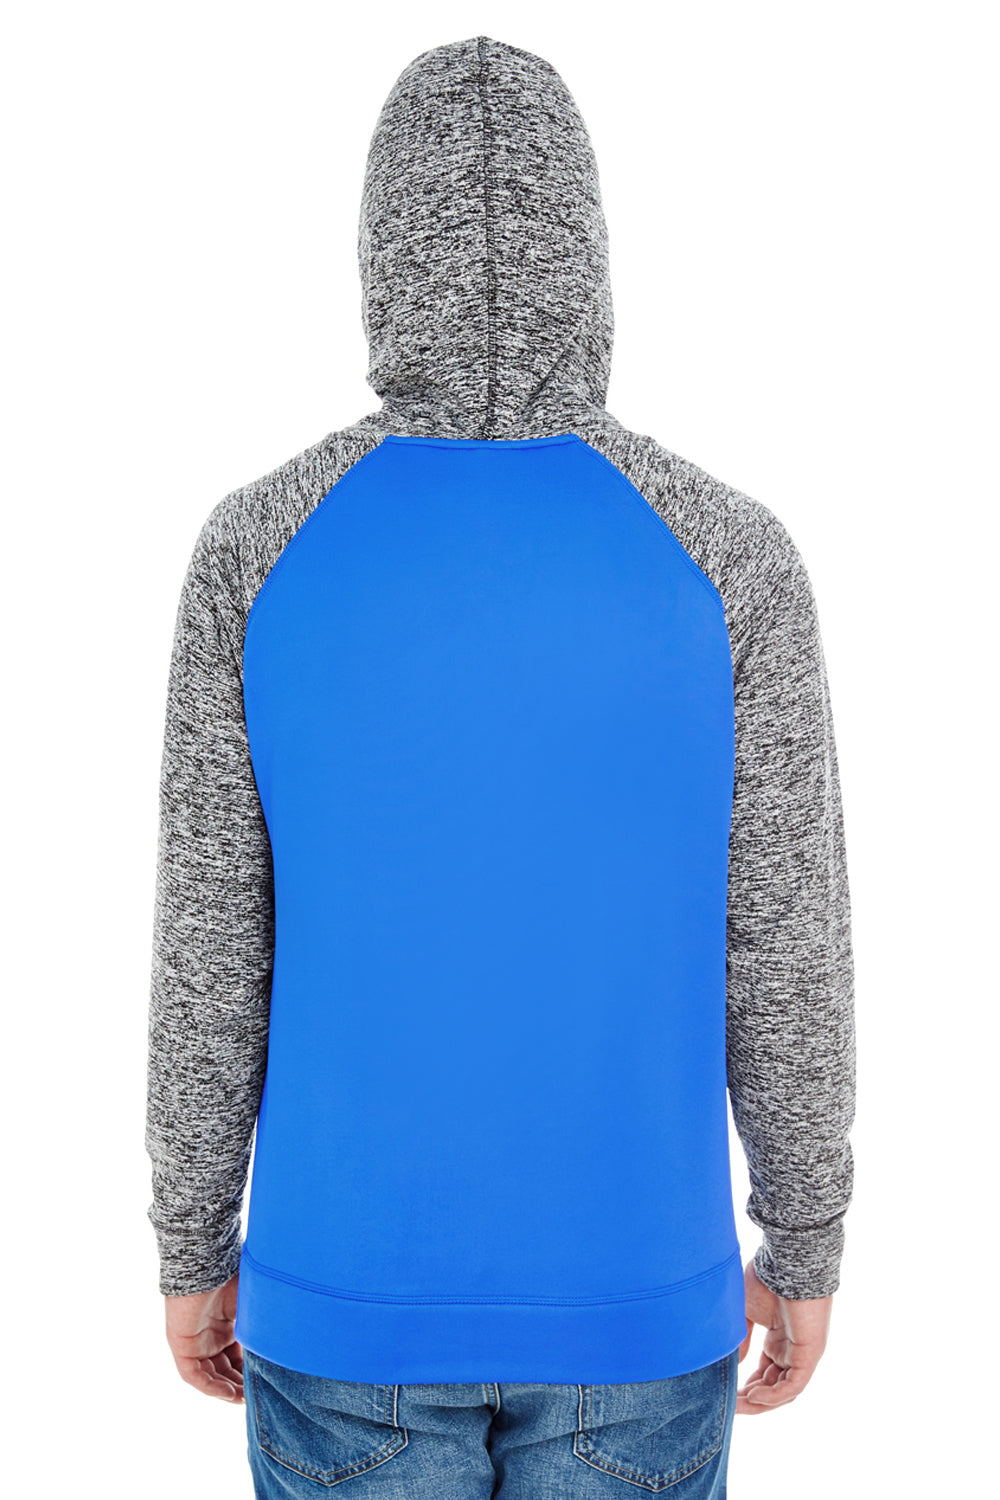 J America JA8612 Mens Cosmic Fleece Hooded Sweatshirt Hoodie Royal Blue/Charcoal Grey Back